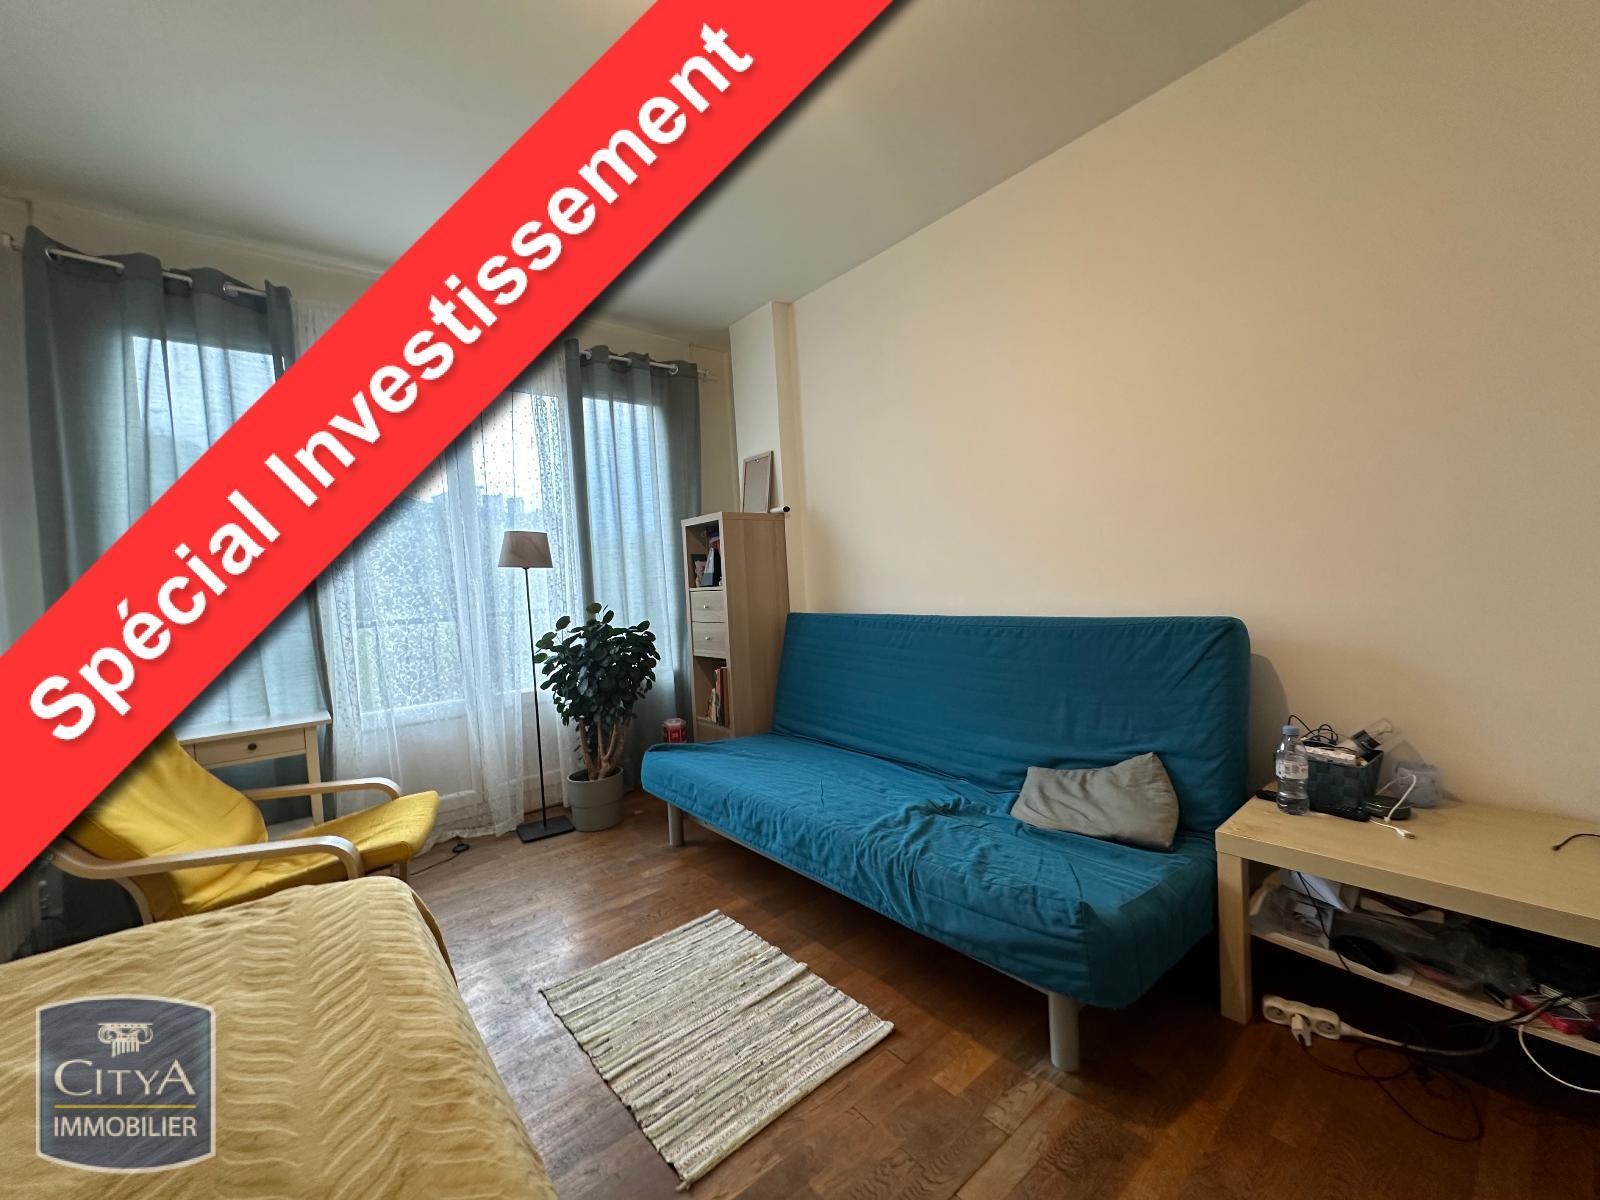 Appartement 1 pièce 30 m² Saint-Martin-le-Vinoux